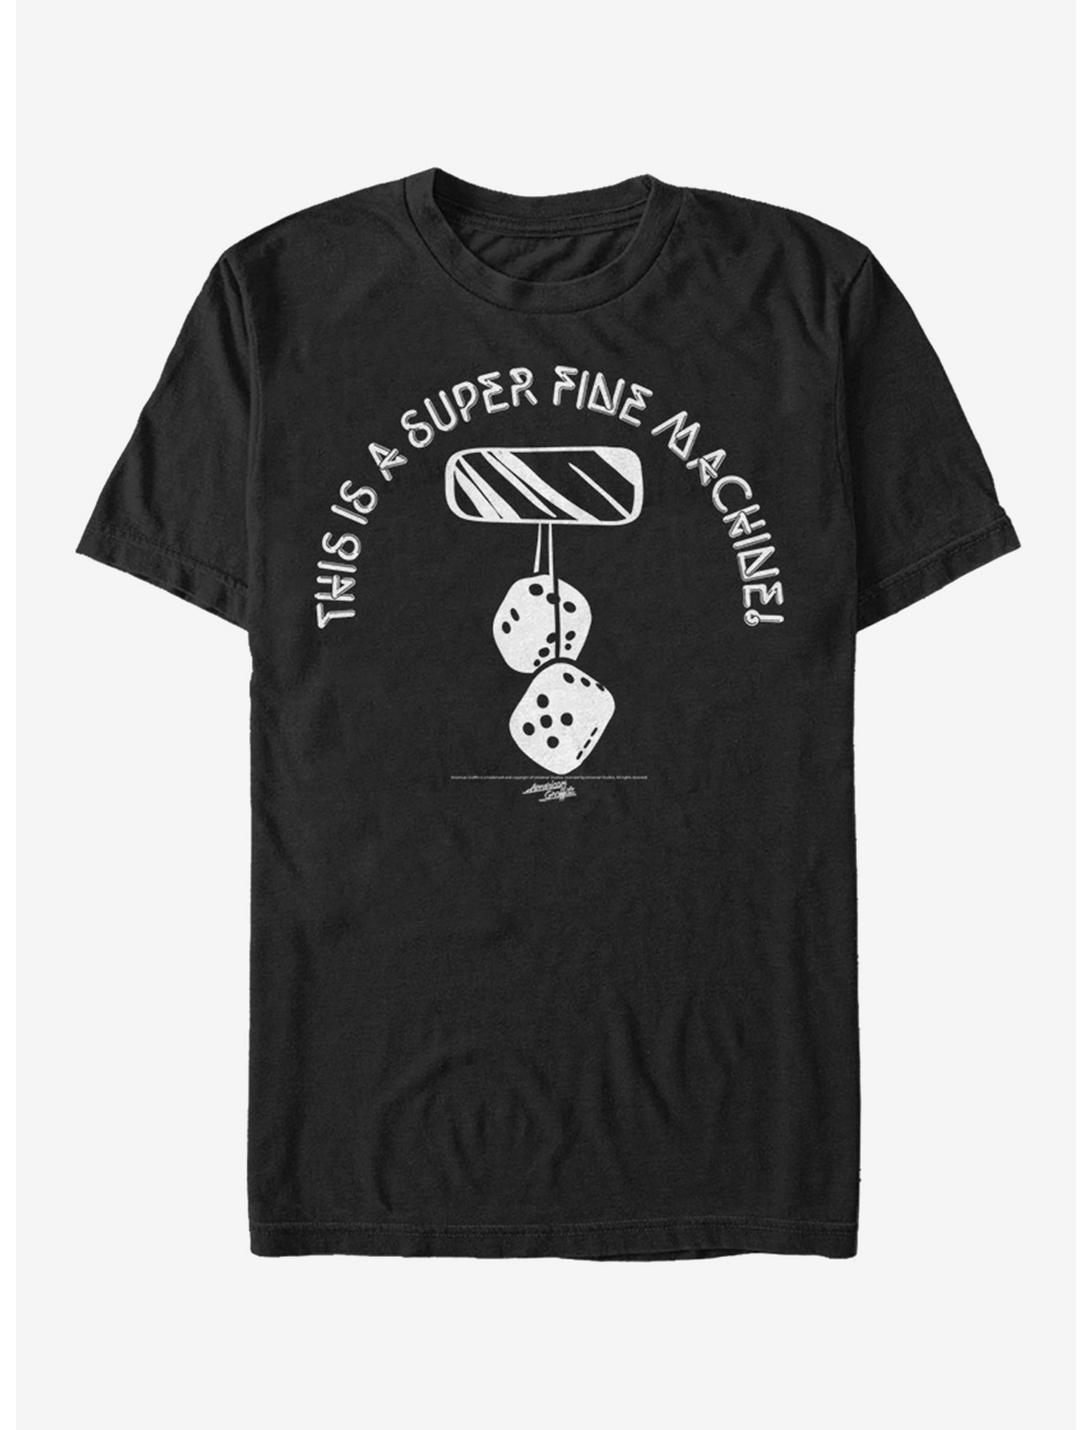 American Graffiti Super Fine Machine T-Shirt, BLACK, hi-res